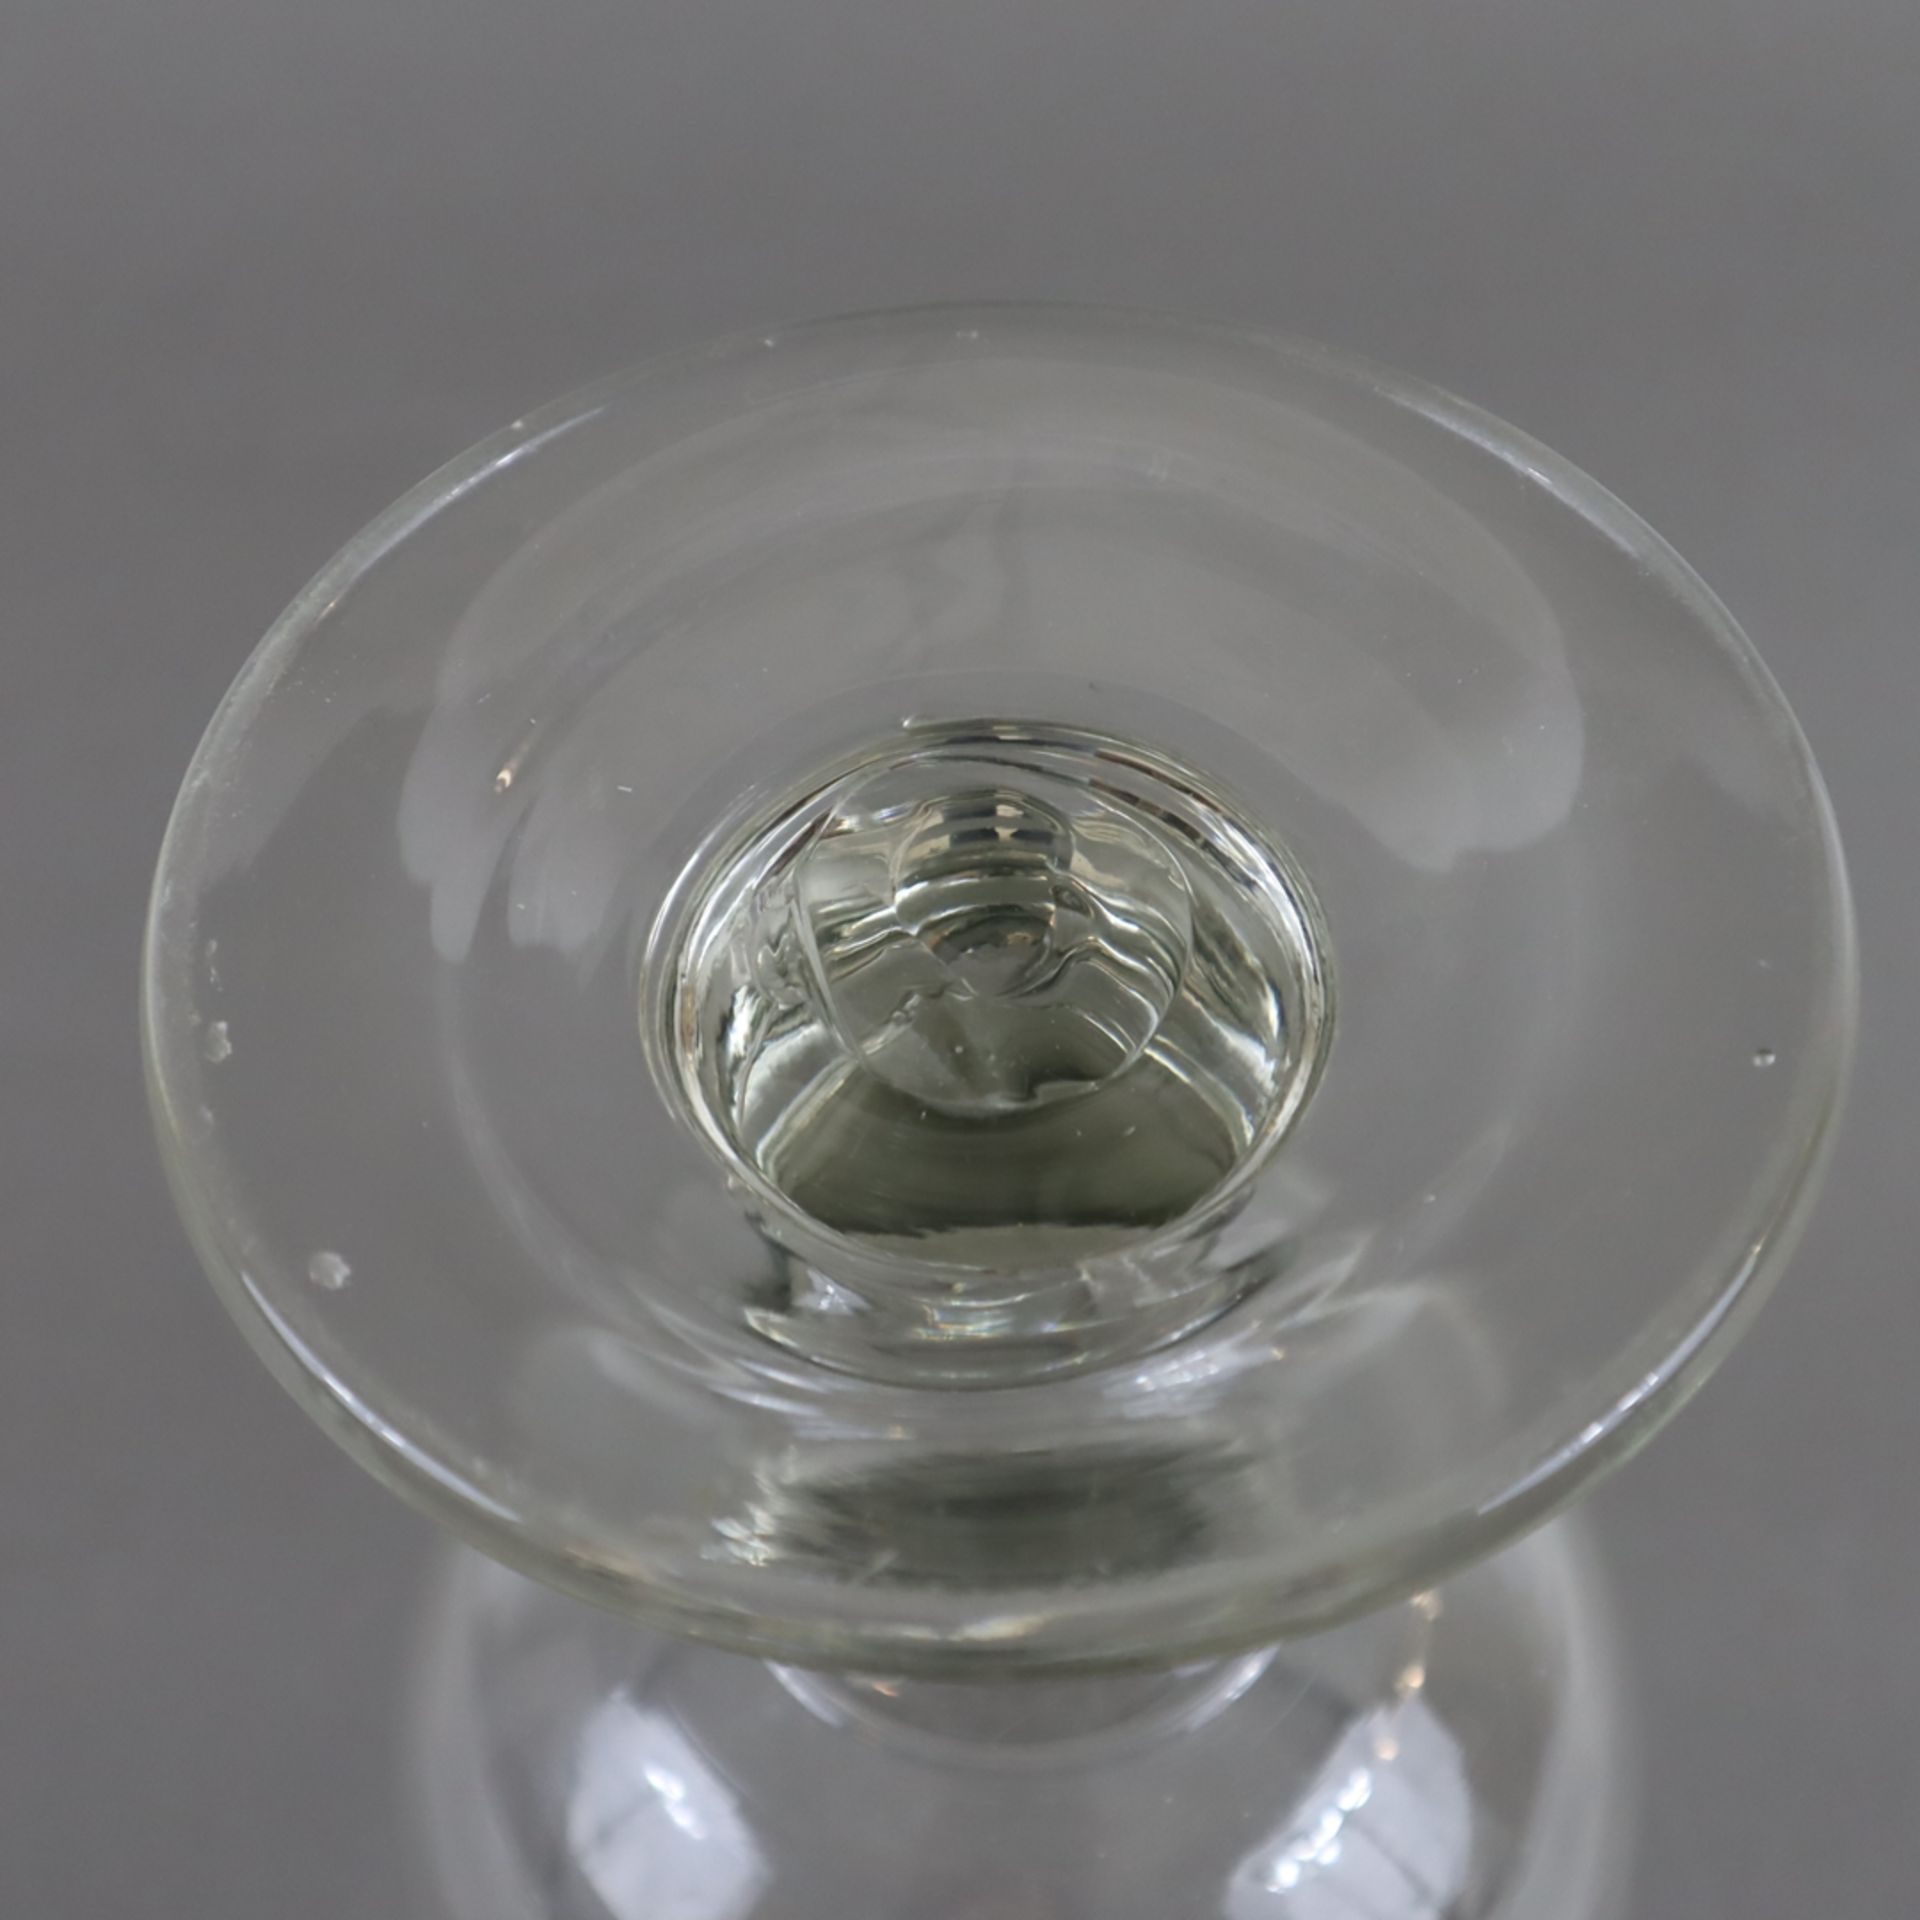 Übergroßes Berliner-Weisse-Glas - 19.Jh., 2 Liter, dickwandiges farbloses Glas, auf rundem gewölbte - Bild 5 aus 5